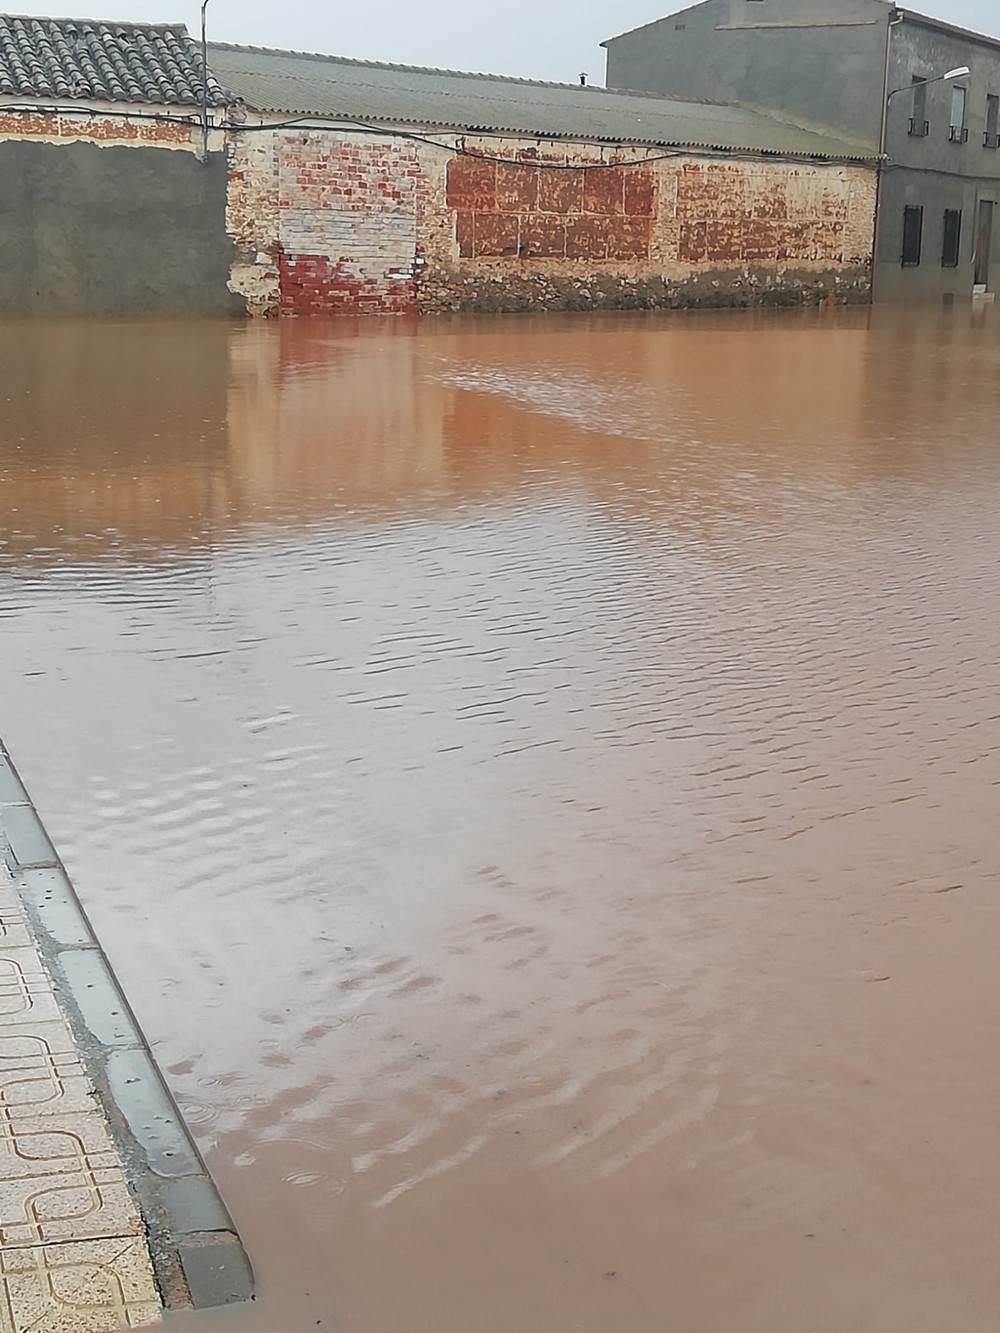 El PSOE lamenta las inundaciones ocurridas en Granátula